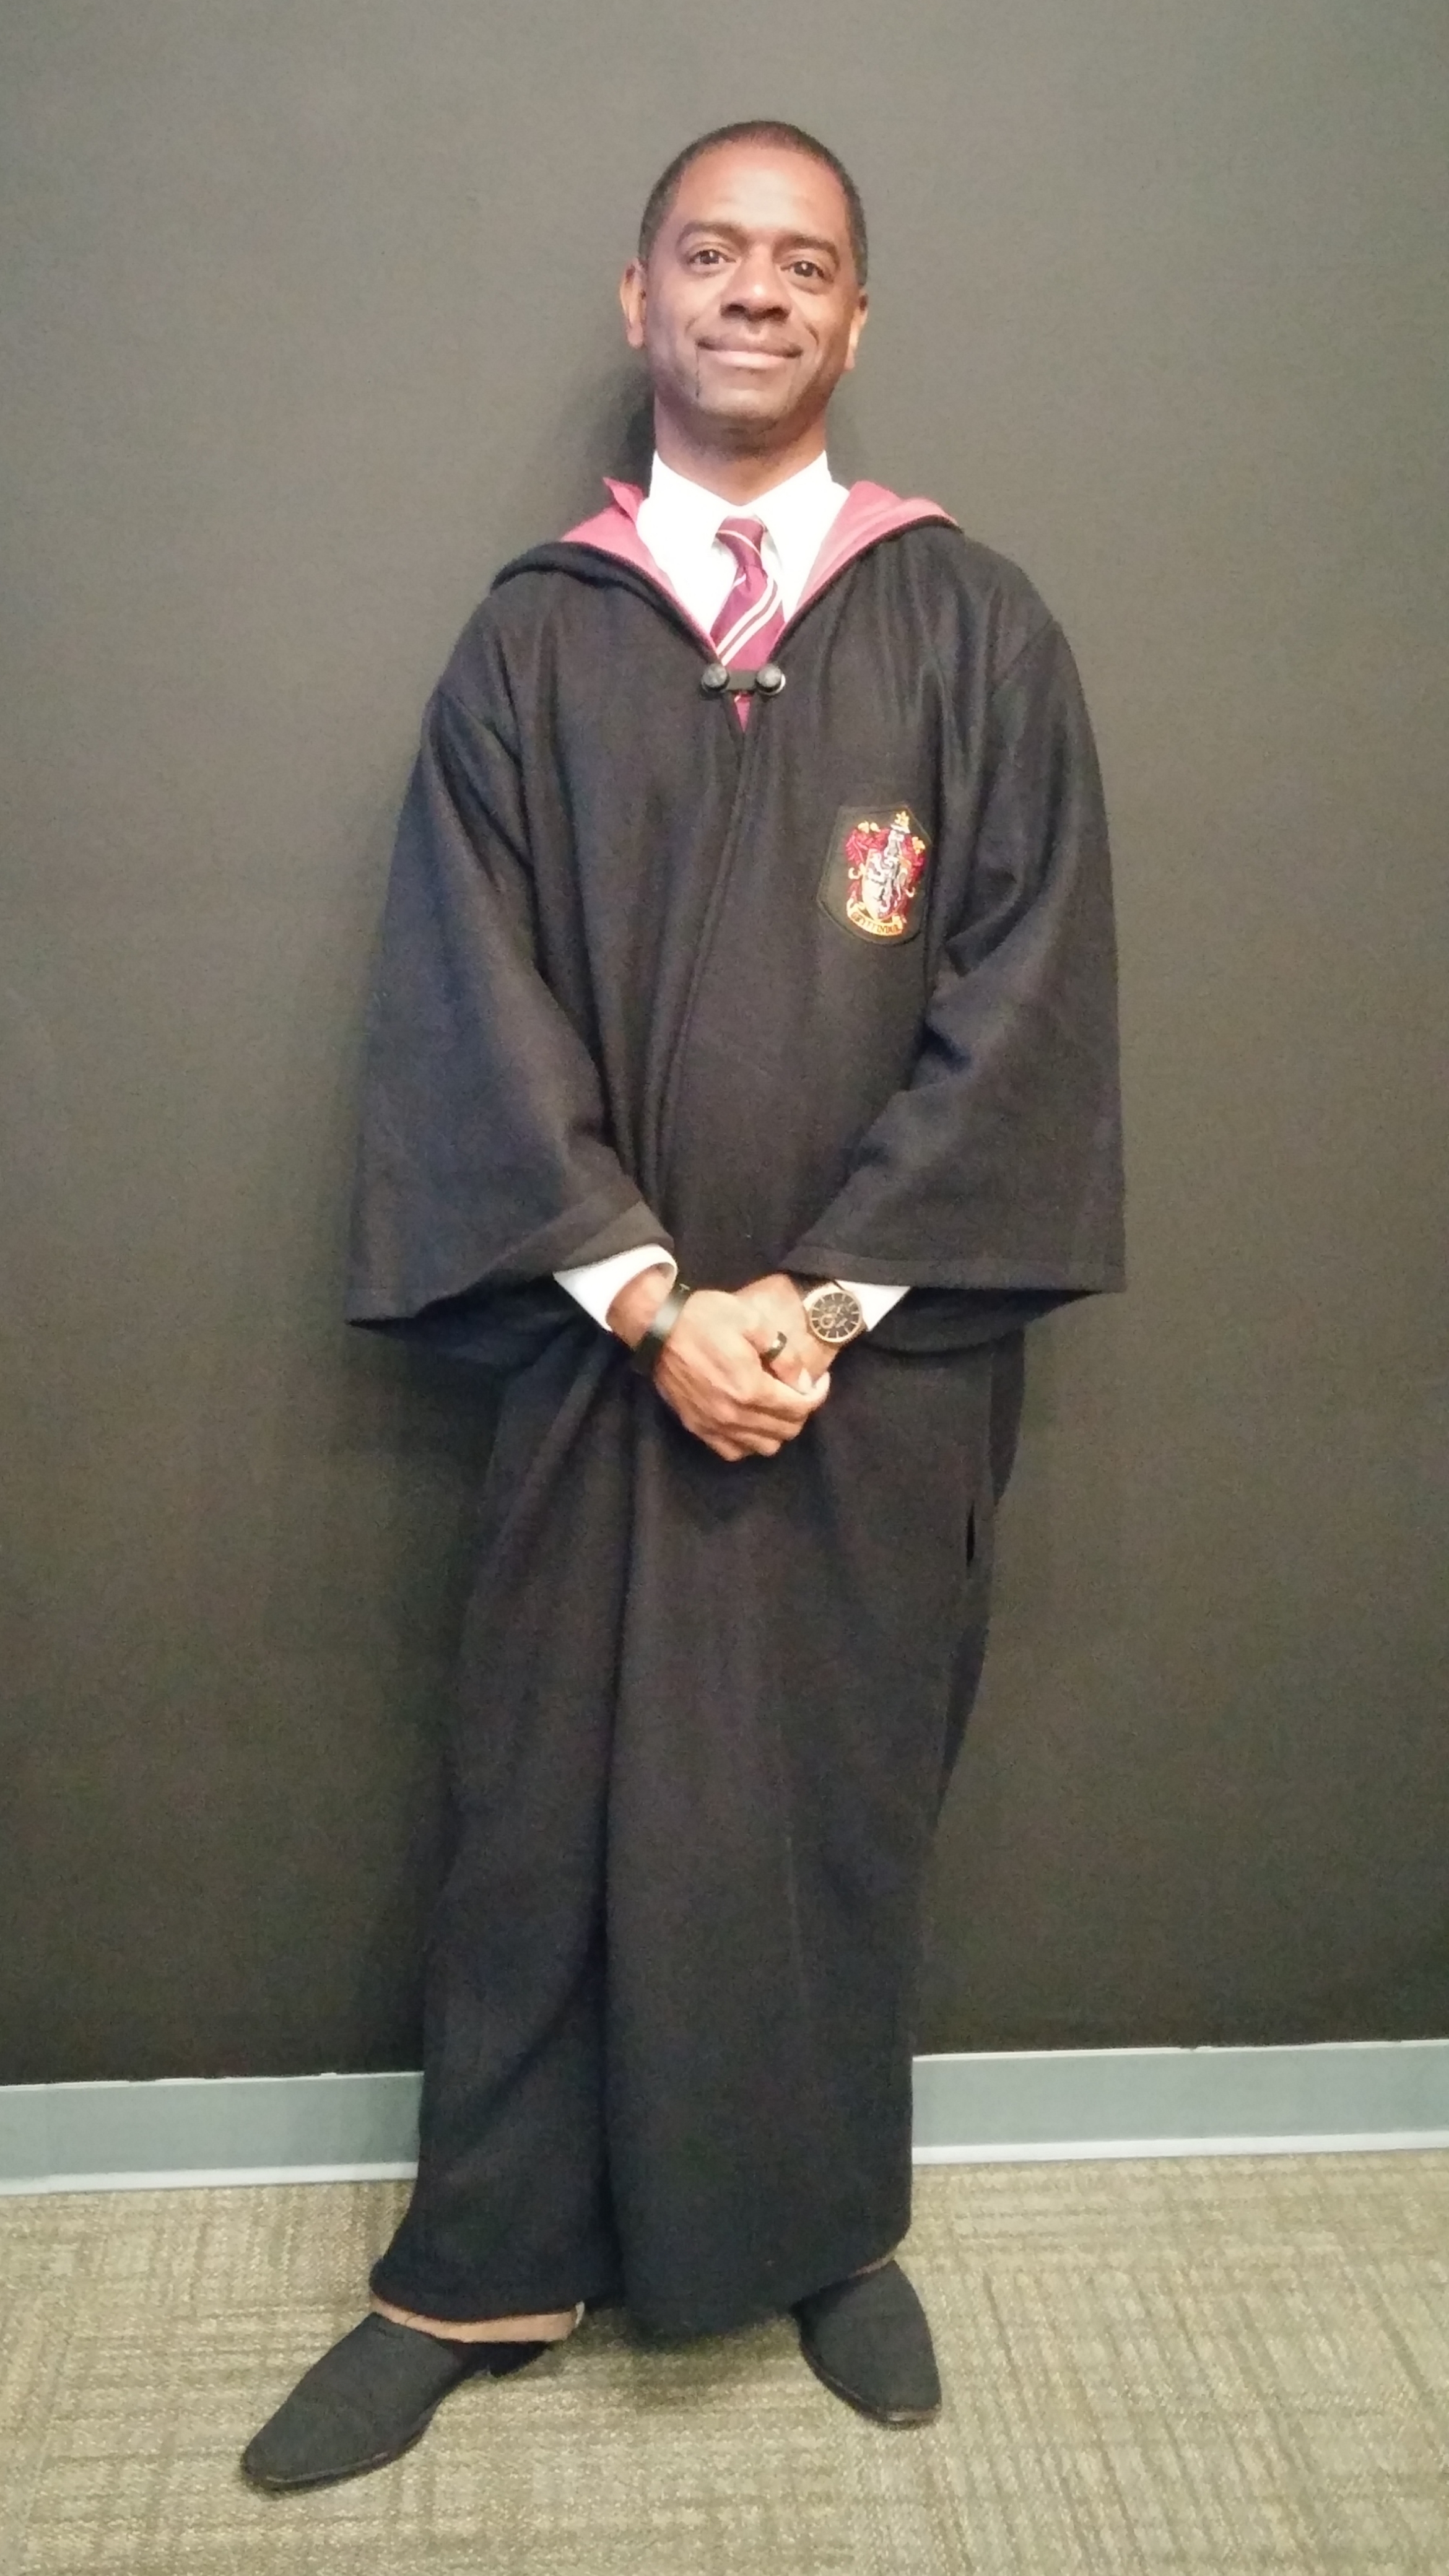 Carlton was a Hogwarts Student